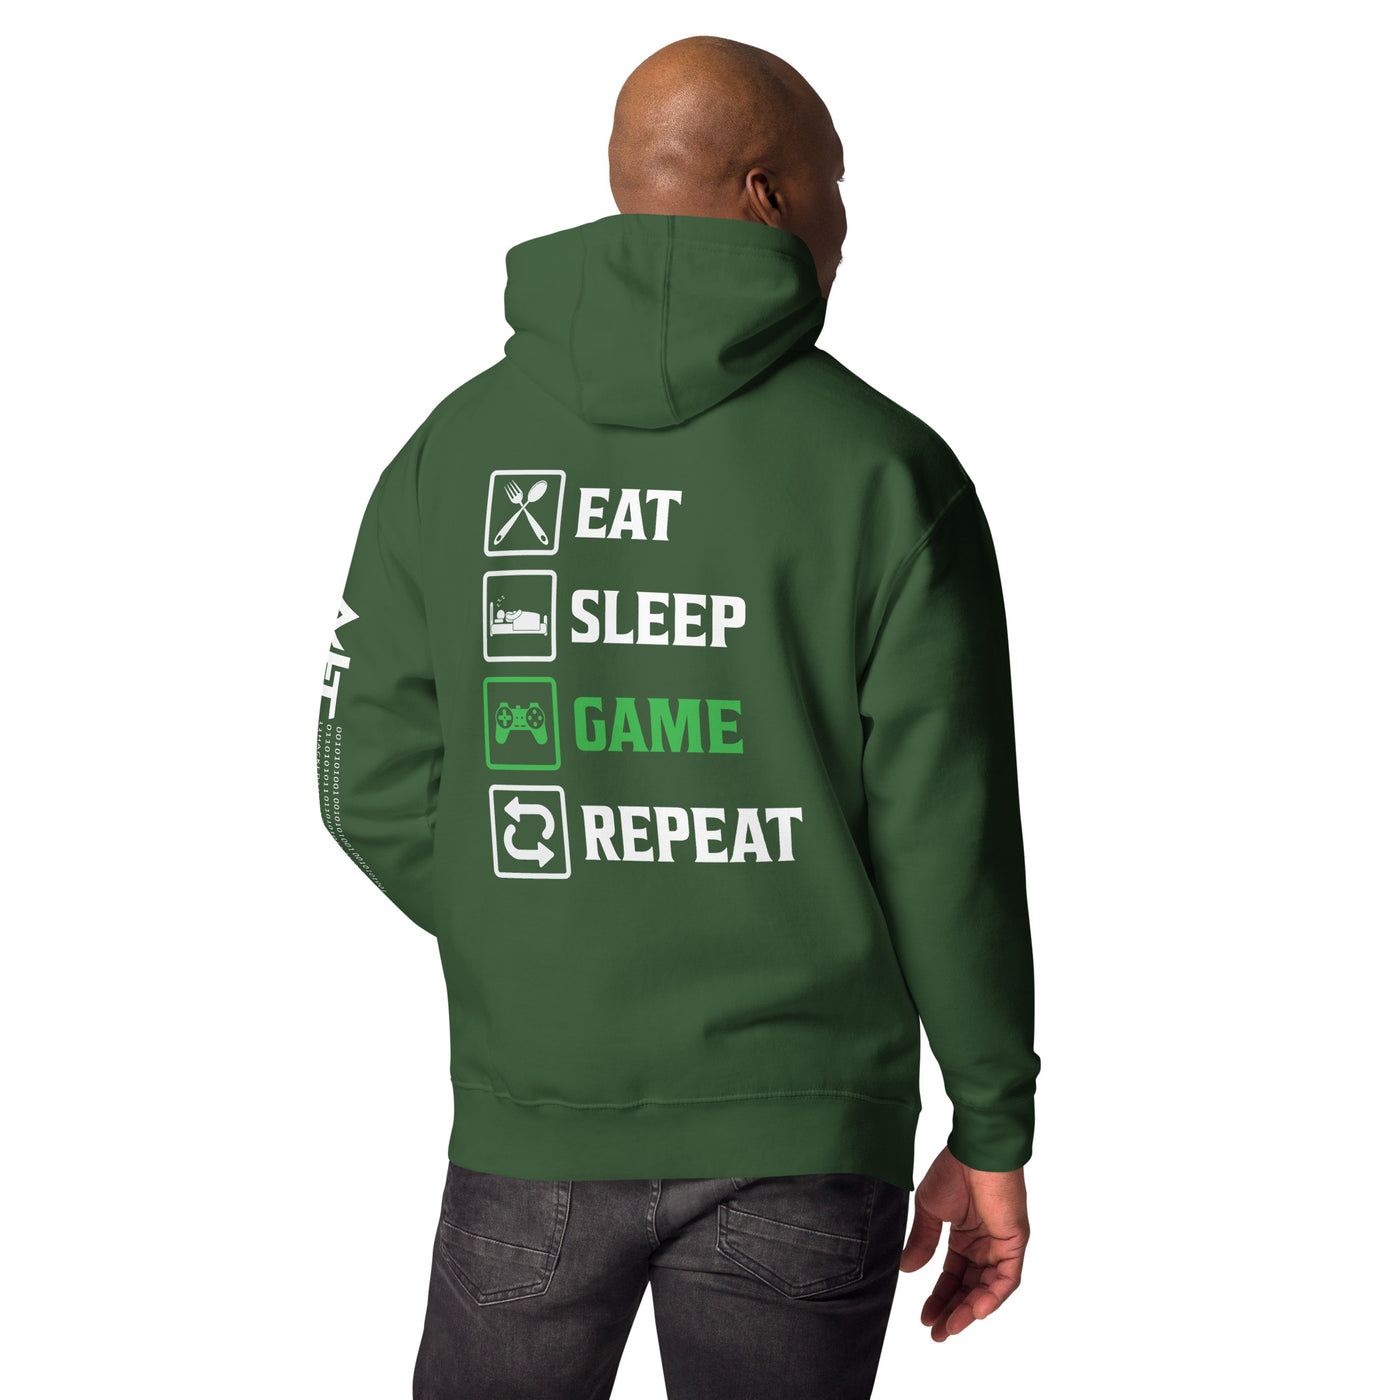 Eat, Sleep, GAME, Repeat - Unisex Hoodie ( Back Print )